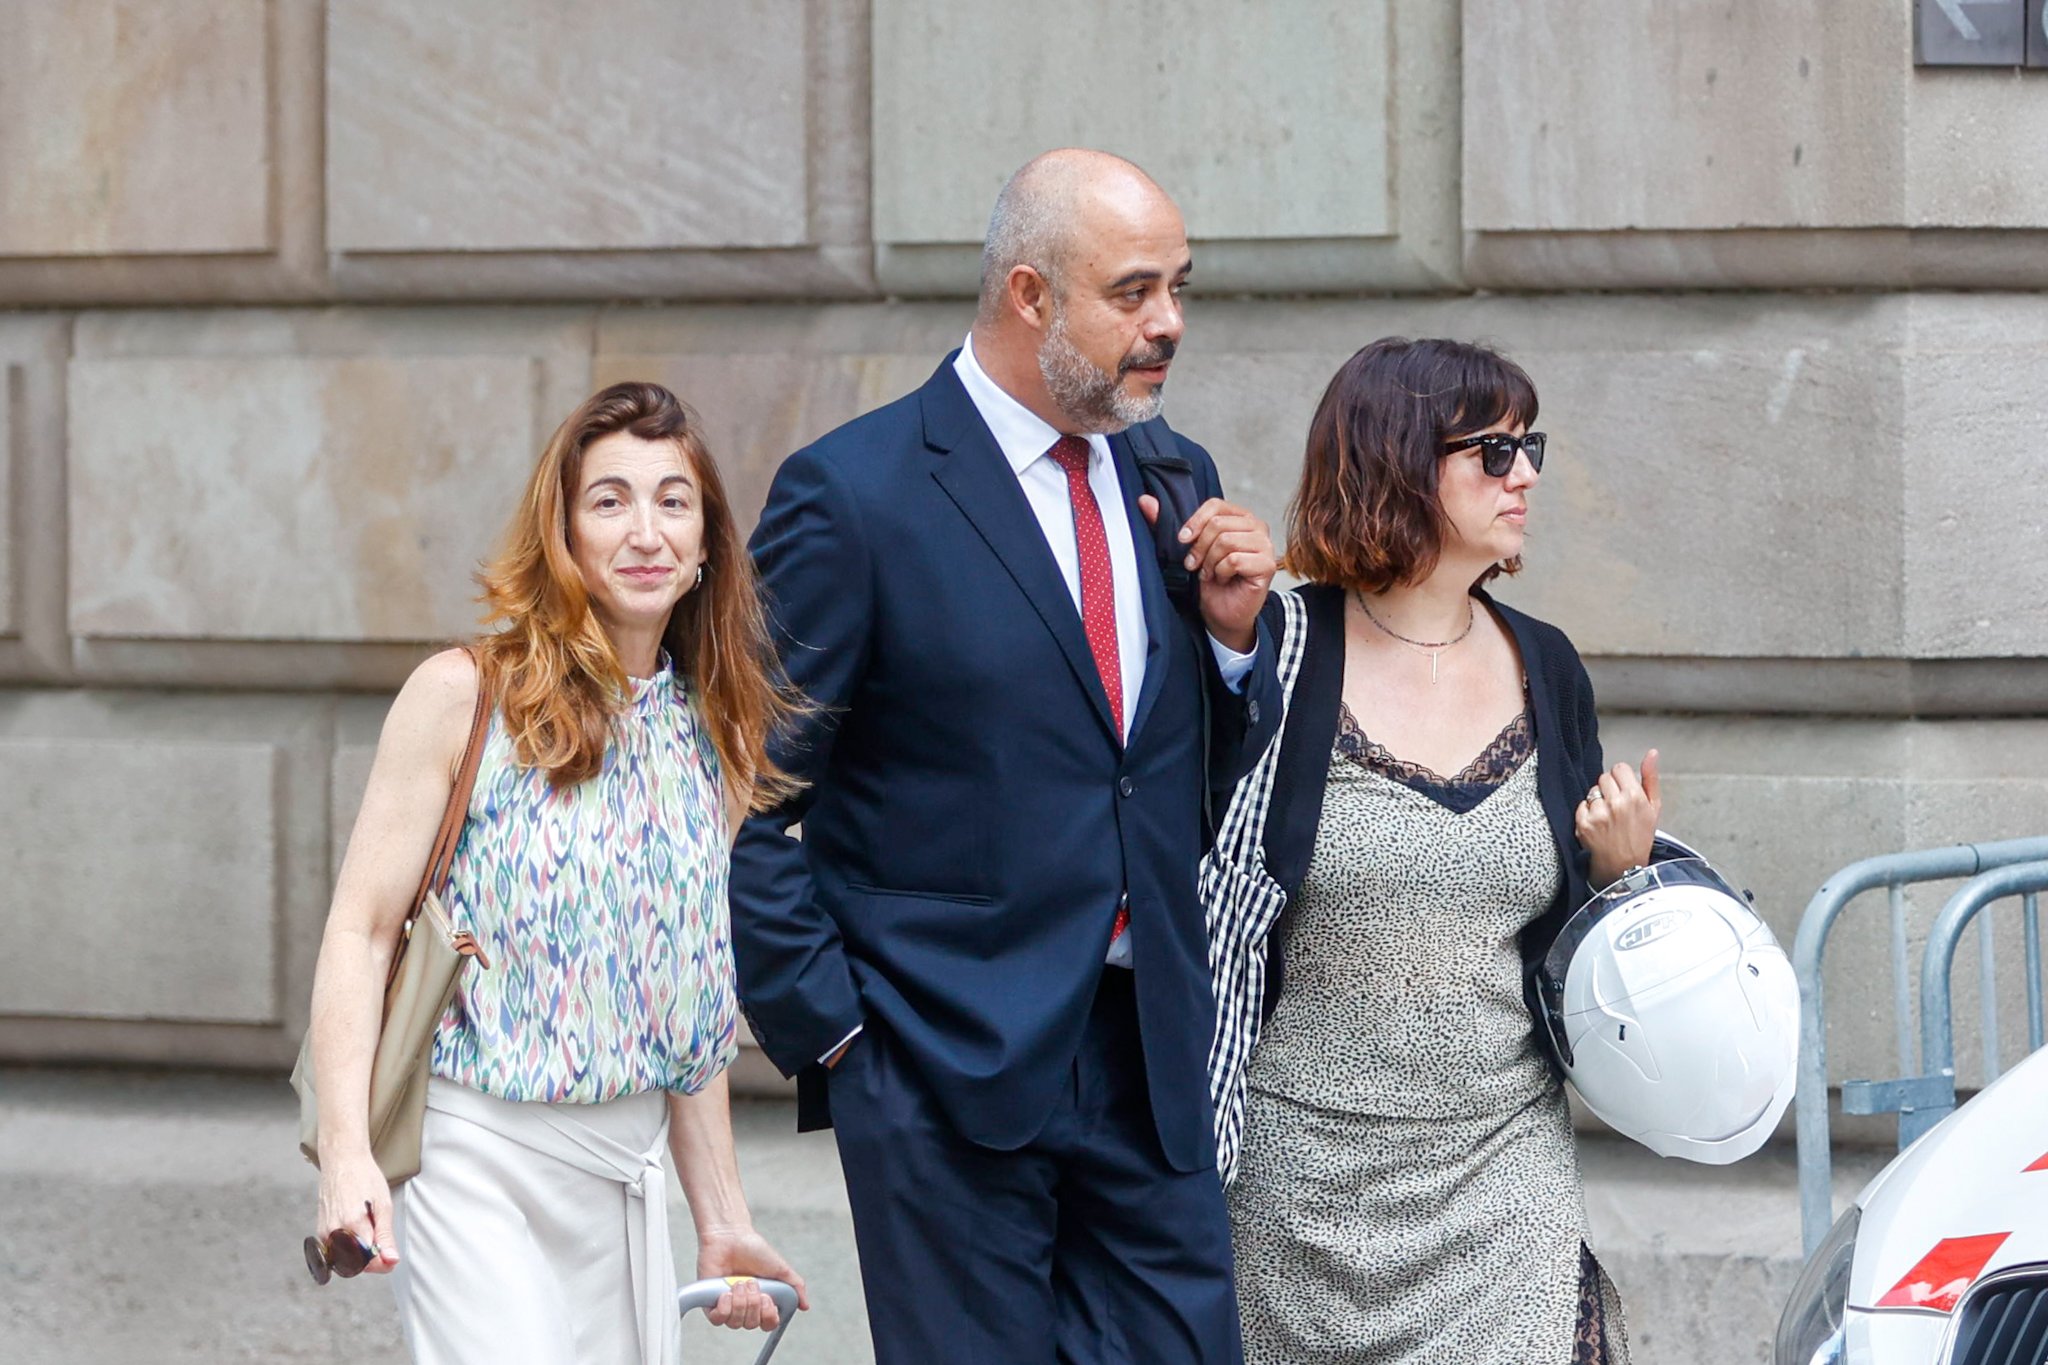 El fiscal reclama 6 anys de presó a l'exconseller Buch per donar protecció a Puigdemont: "Una persona fugada"